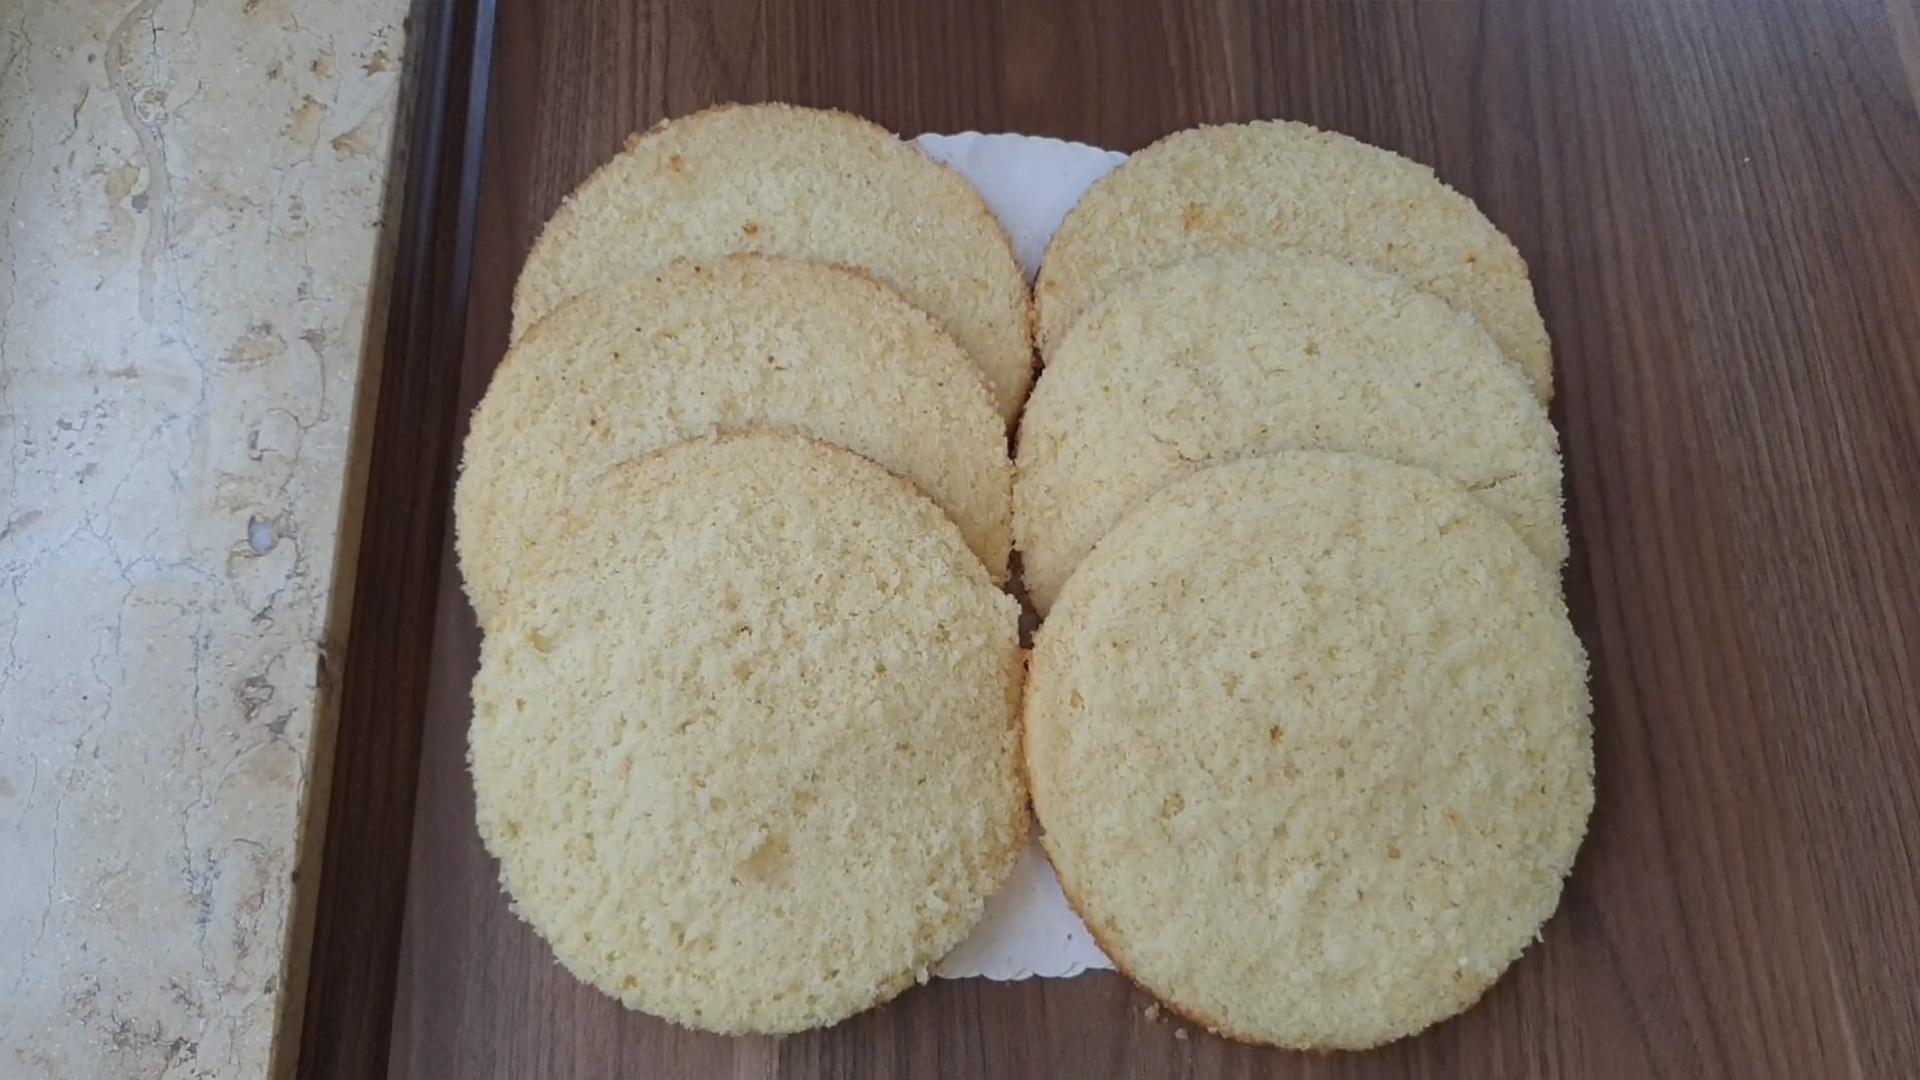 Бисквит для торта на кипятке в духовке и мокрый бисквит — ТОП-7 рецептов сочного бисквита для торта